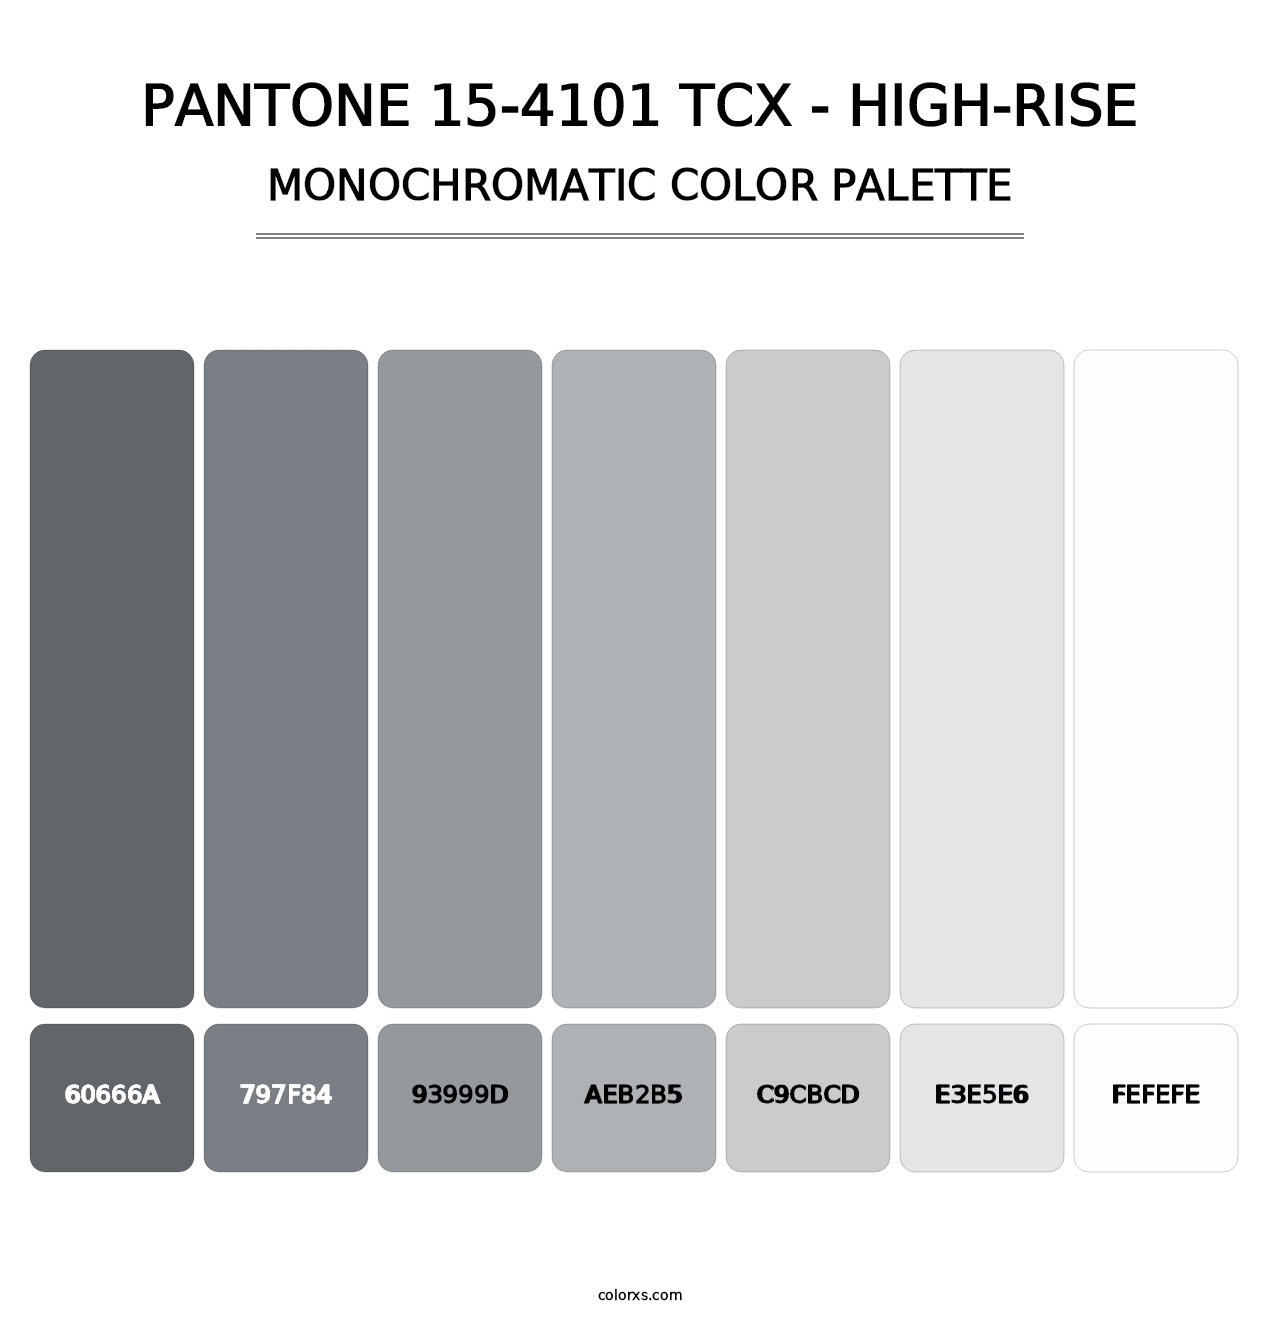 PANTONE 15-4101 TCX - High-rise - Monochromatic Color Palette